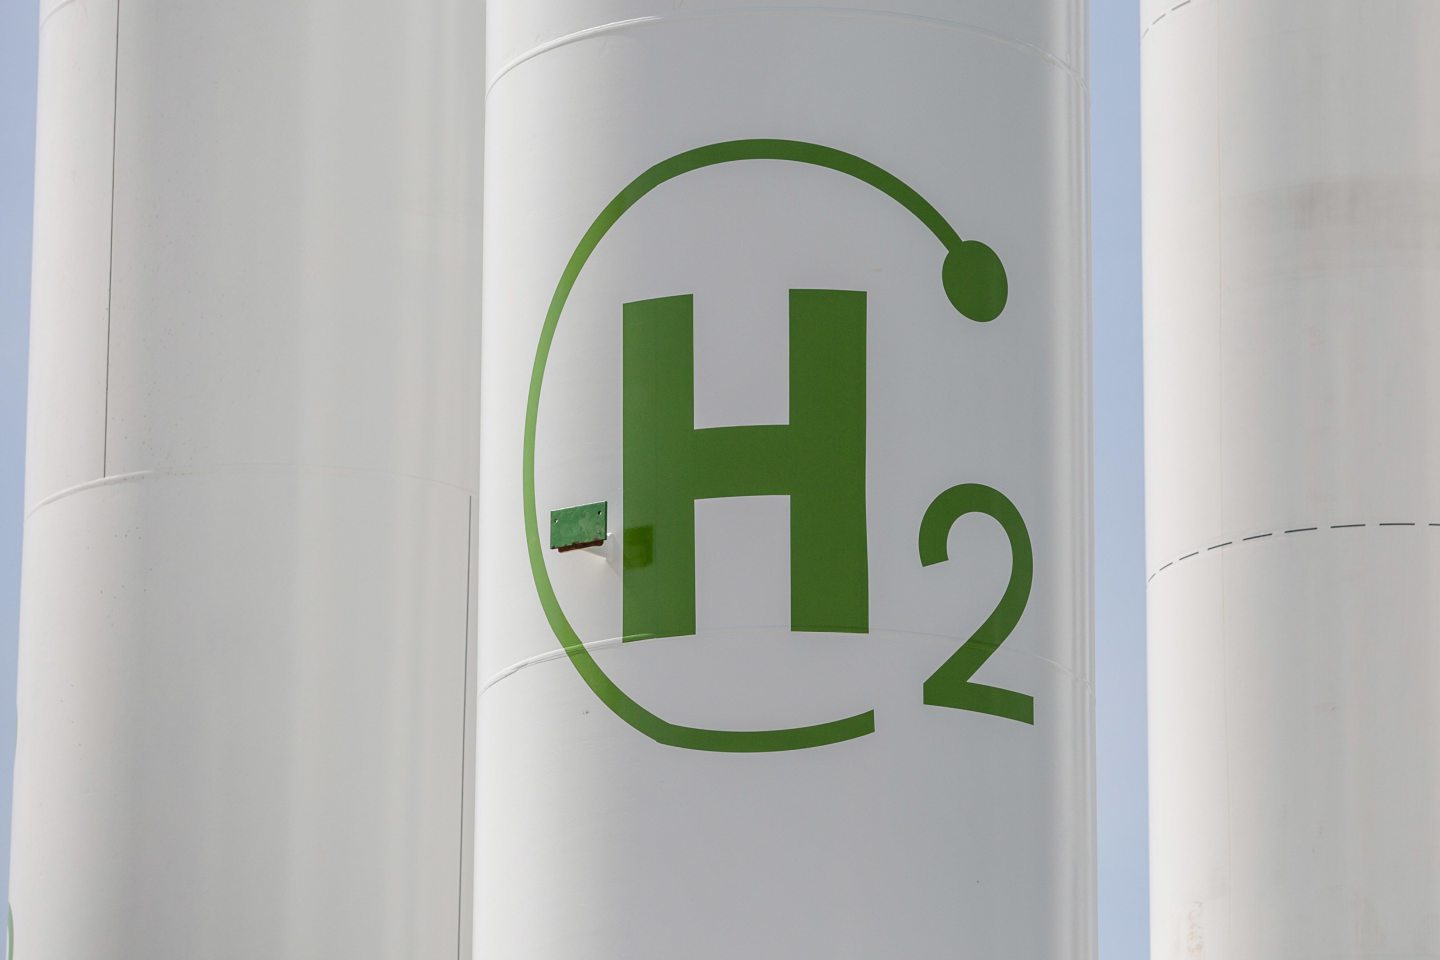 new Hydrogen UK members